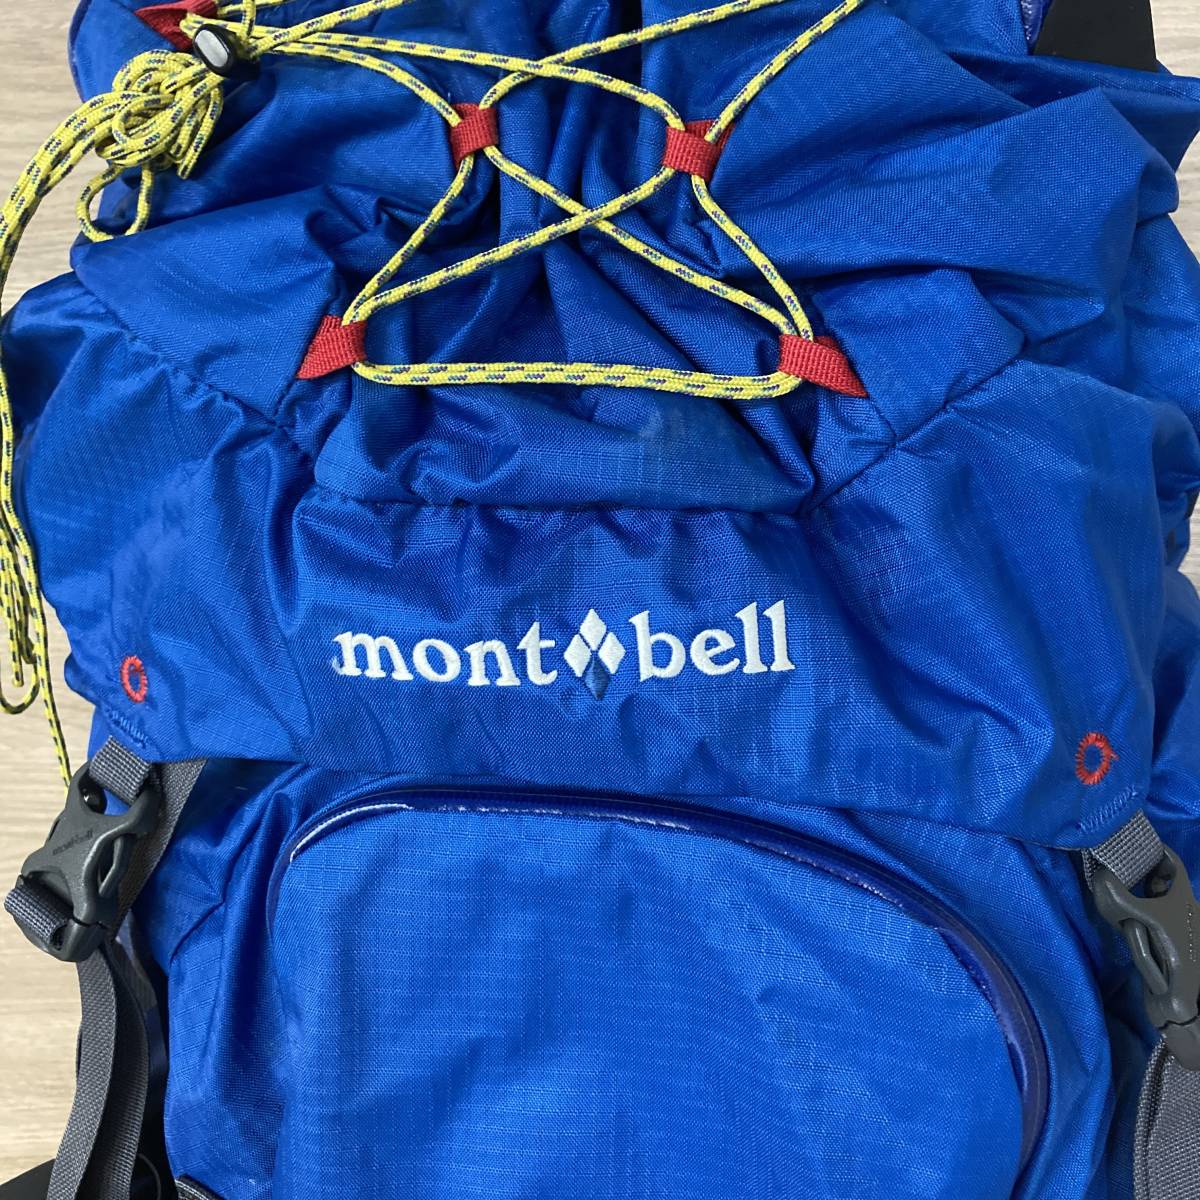 モンベル TREKKING PACK 55 mont-bell トレッキングパック バックパック 登山 キャンプ アウトドア tmc02052556_画像2